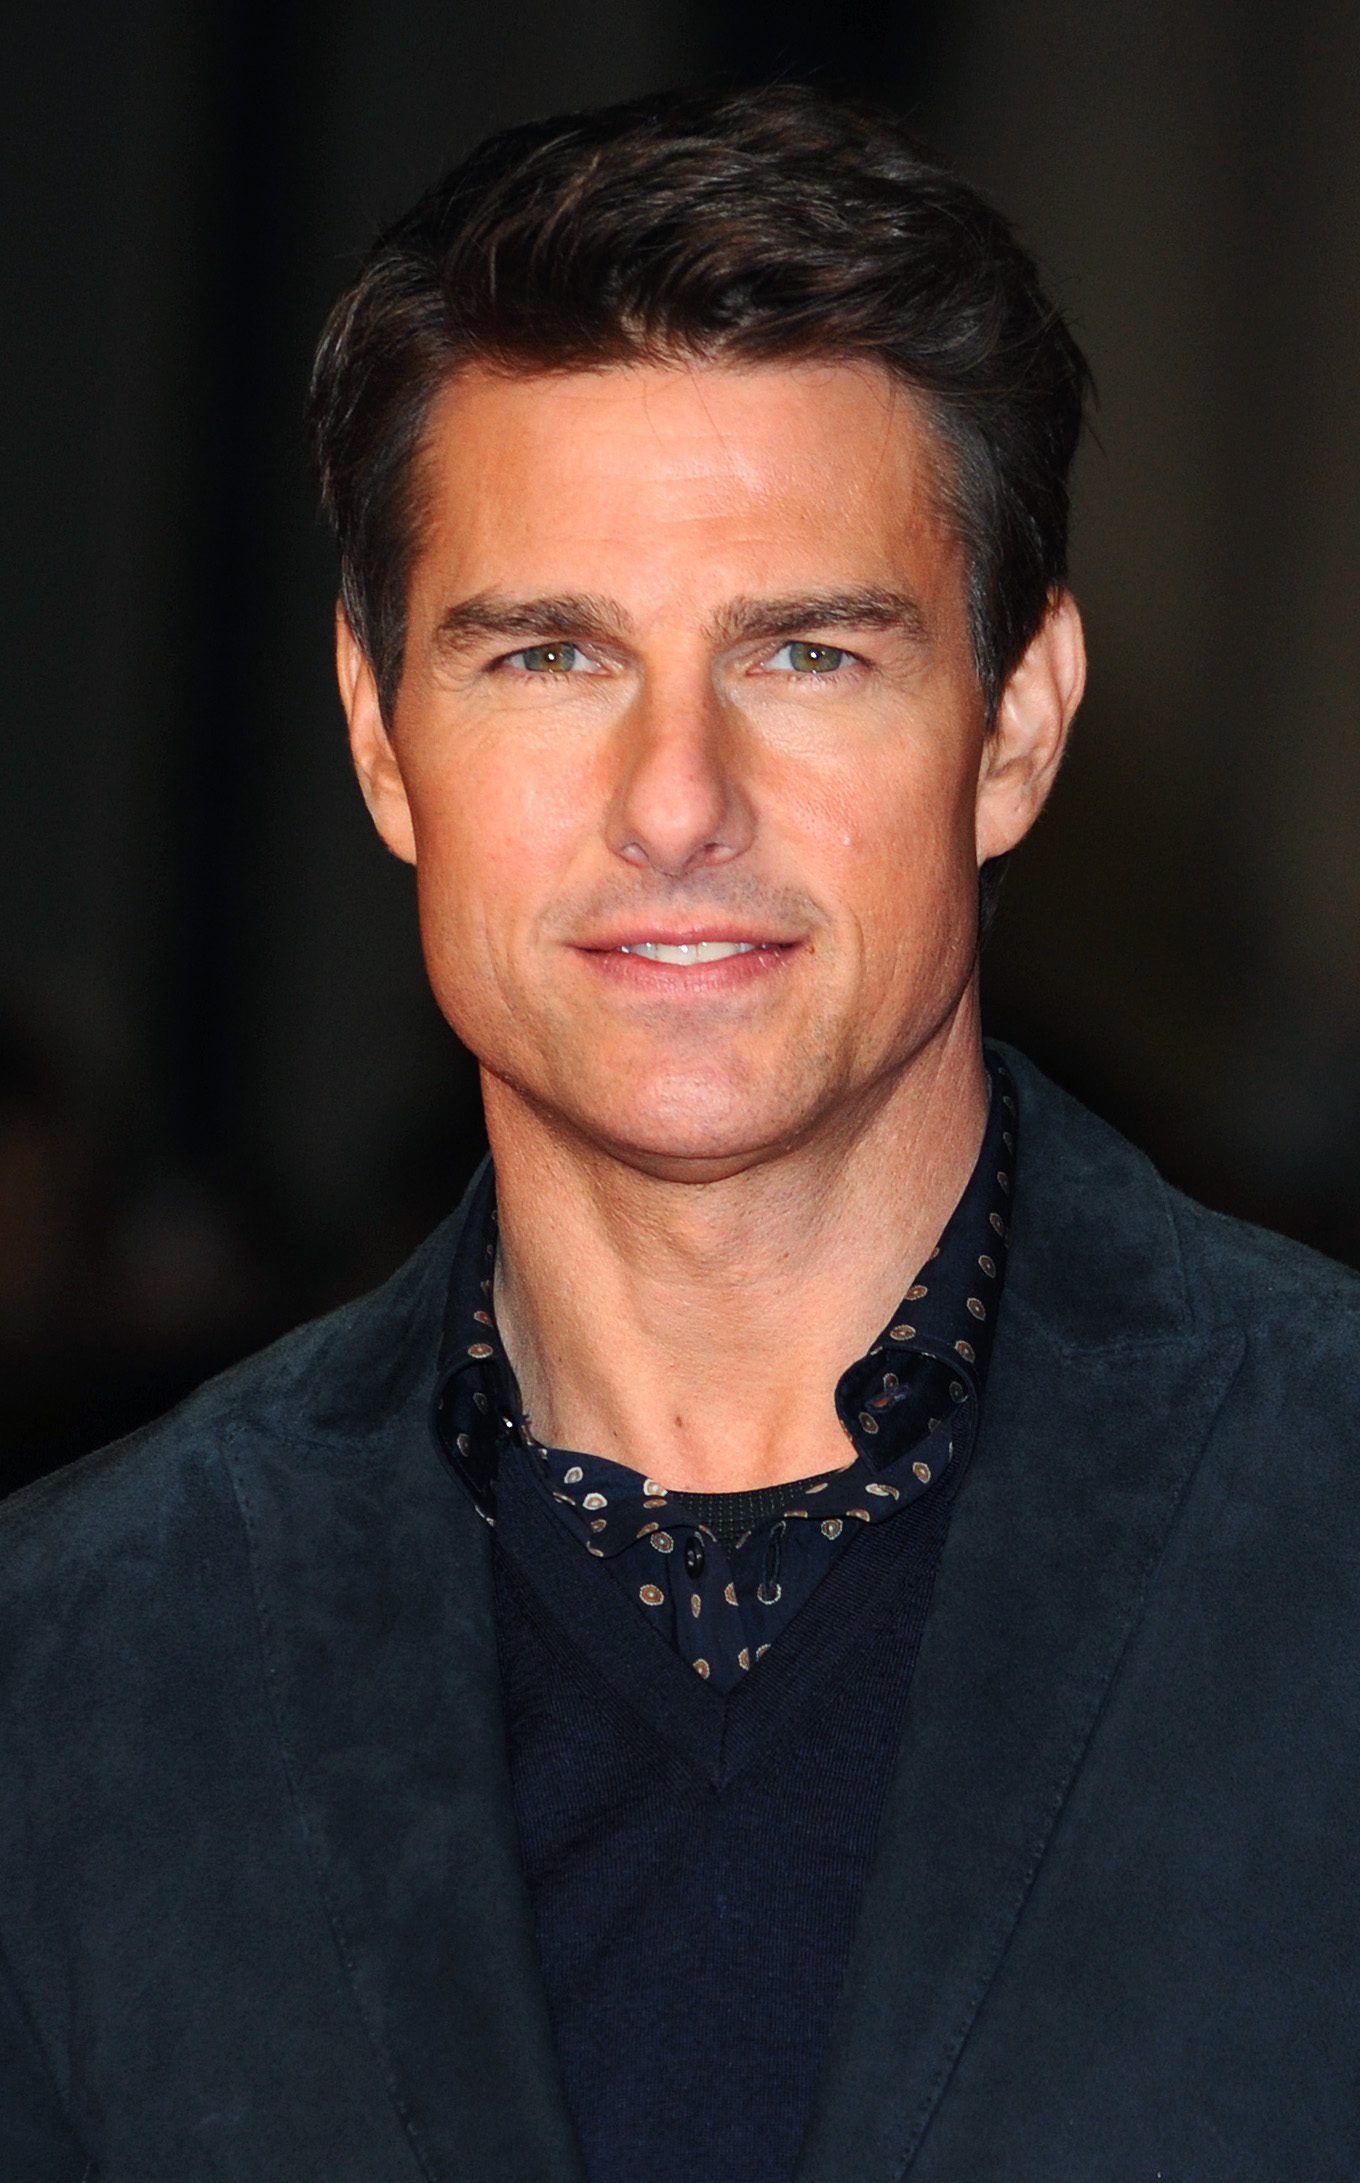 Tom Cruise asiste al estreno de "Jack Reacher" el 10 de diciembre de 2012 en Londres, Inglaterra | Foto: Getty Images